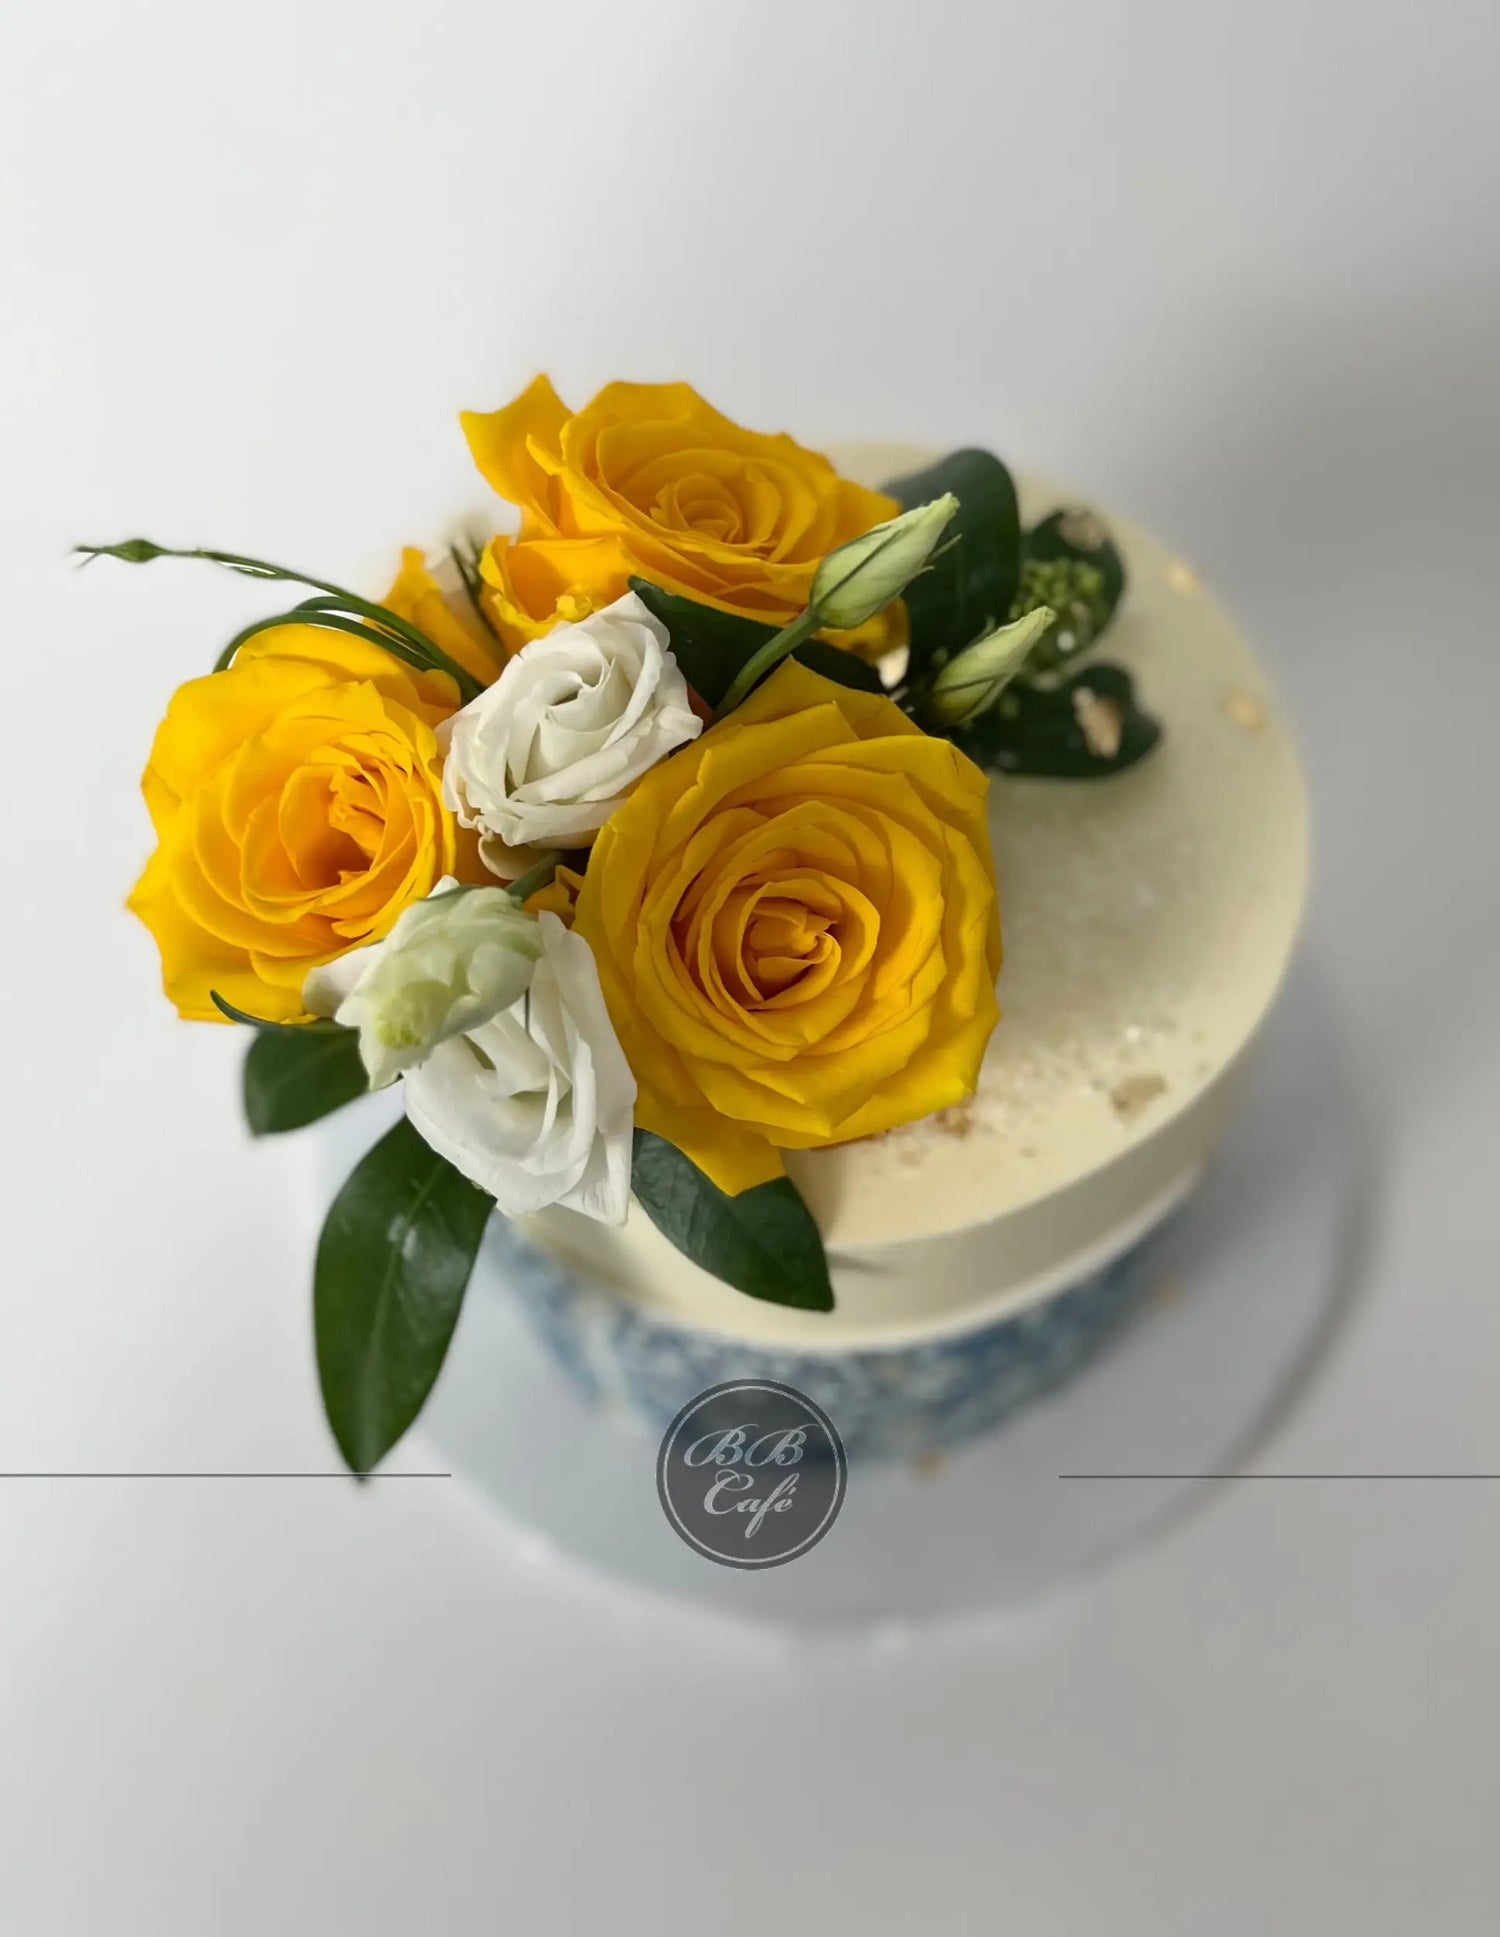 Tile edible print on buttercream - custom cake